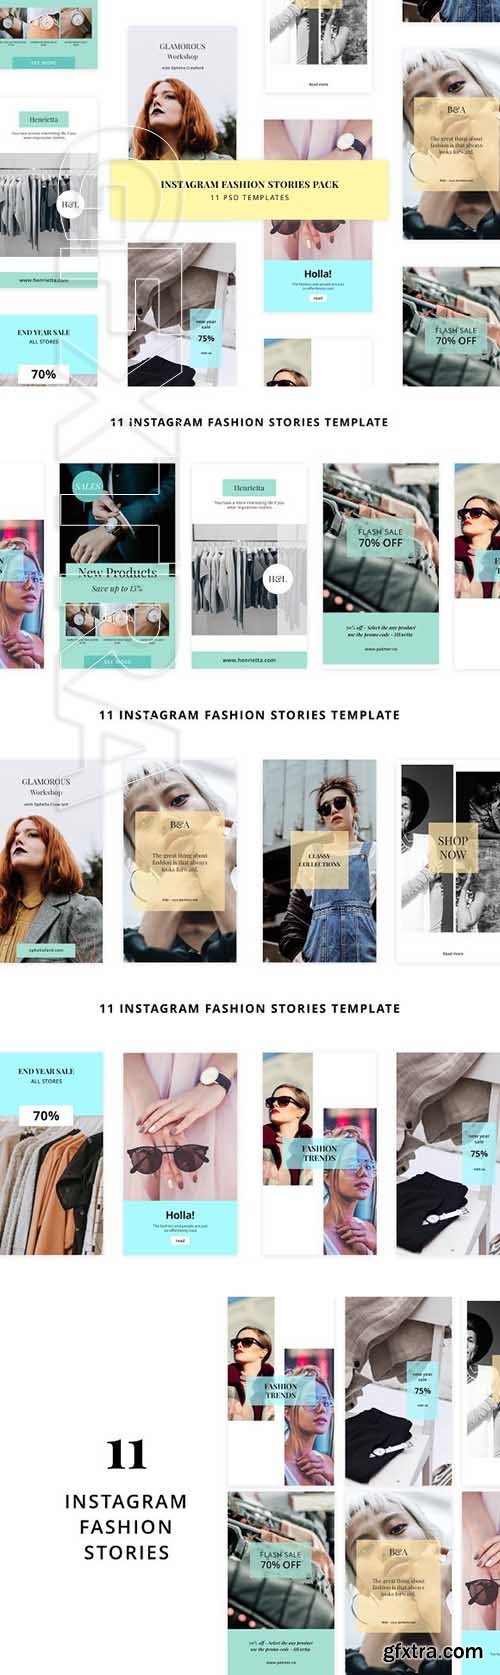 CreativeMarket - Instagram Fashion Stories Pack 2128383